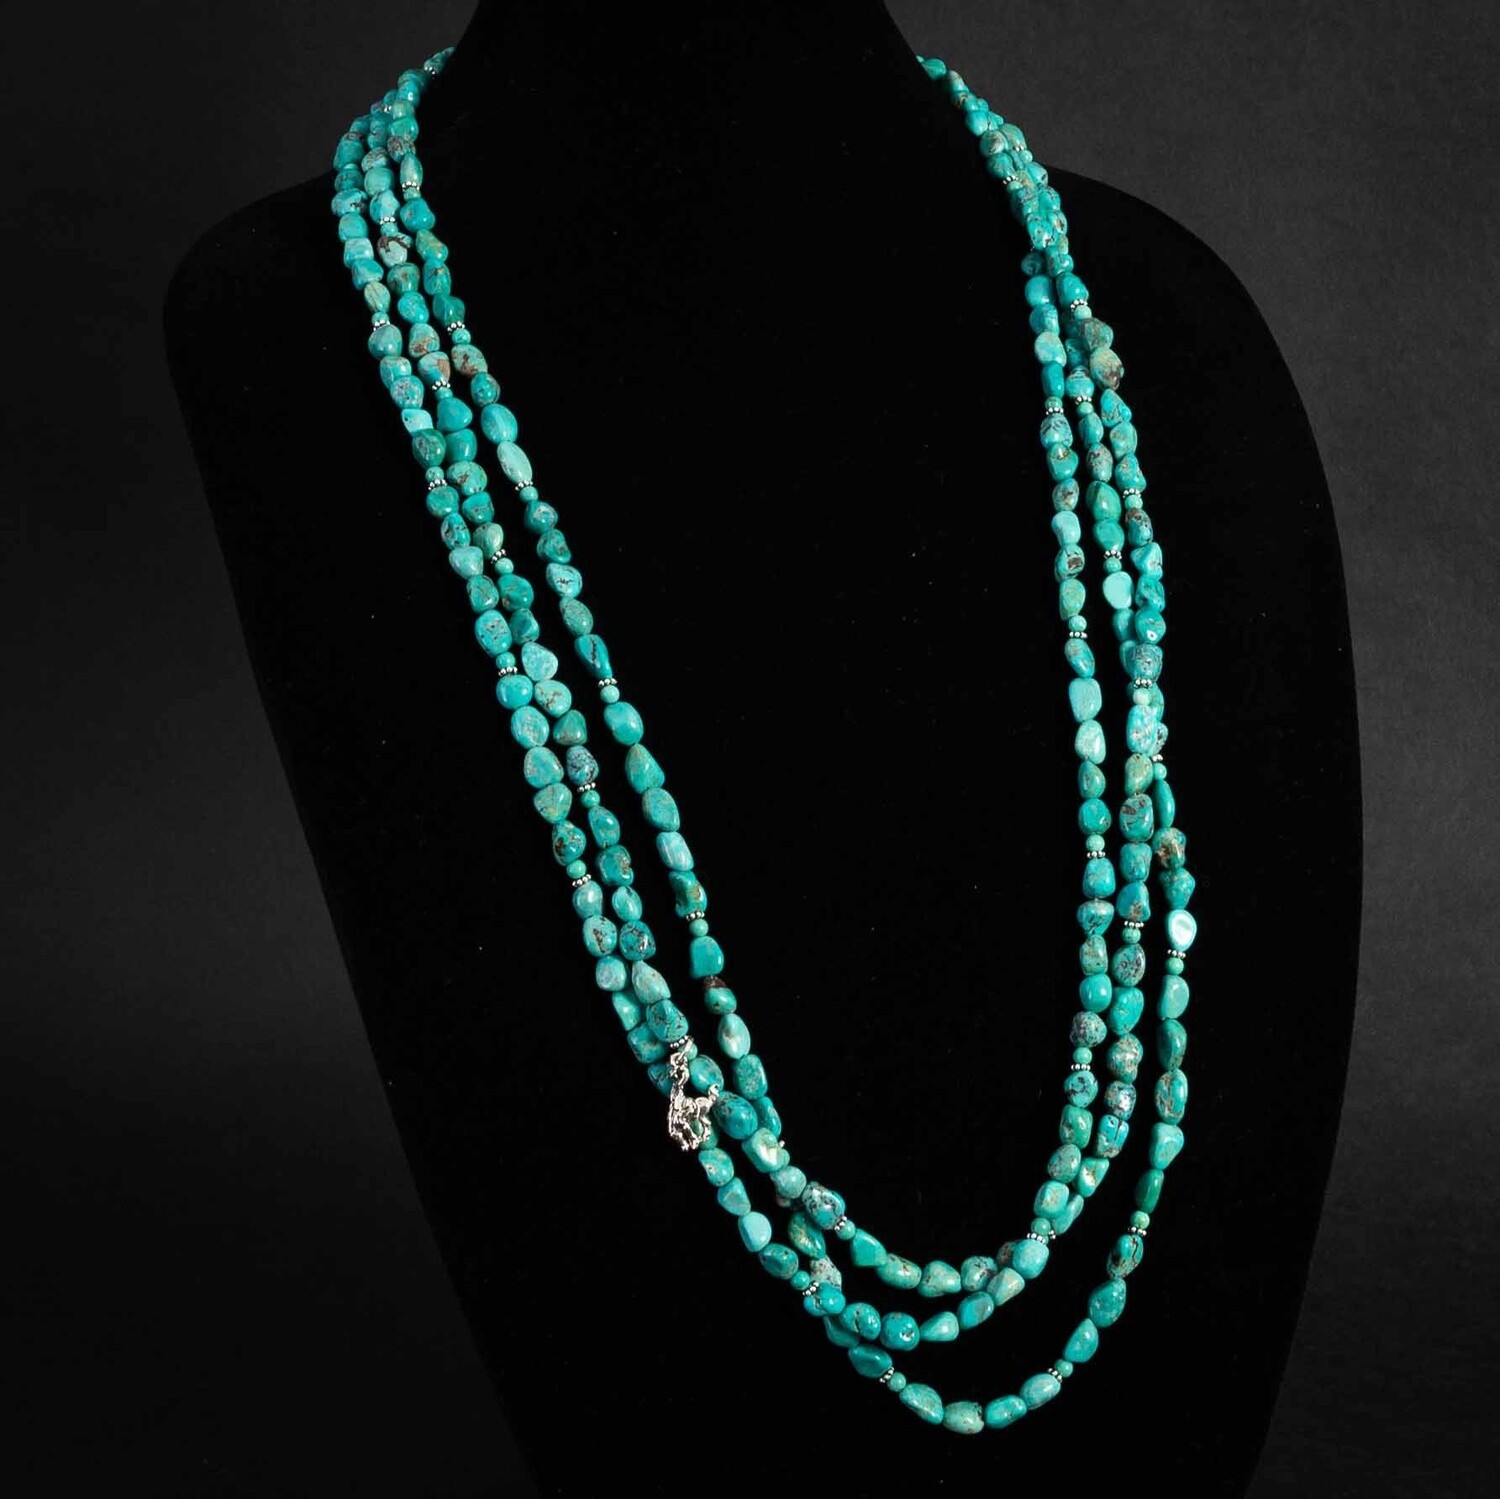 Pendleton Round-Up Turquoise Necklace